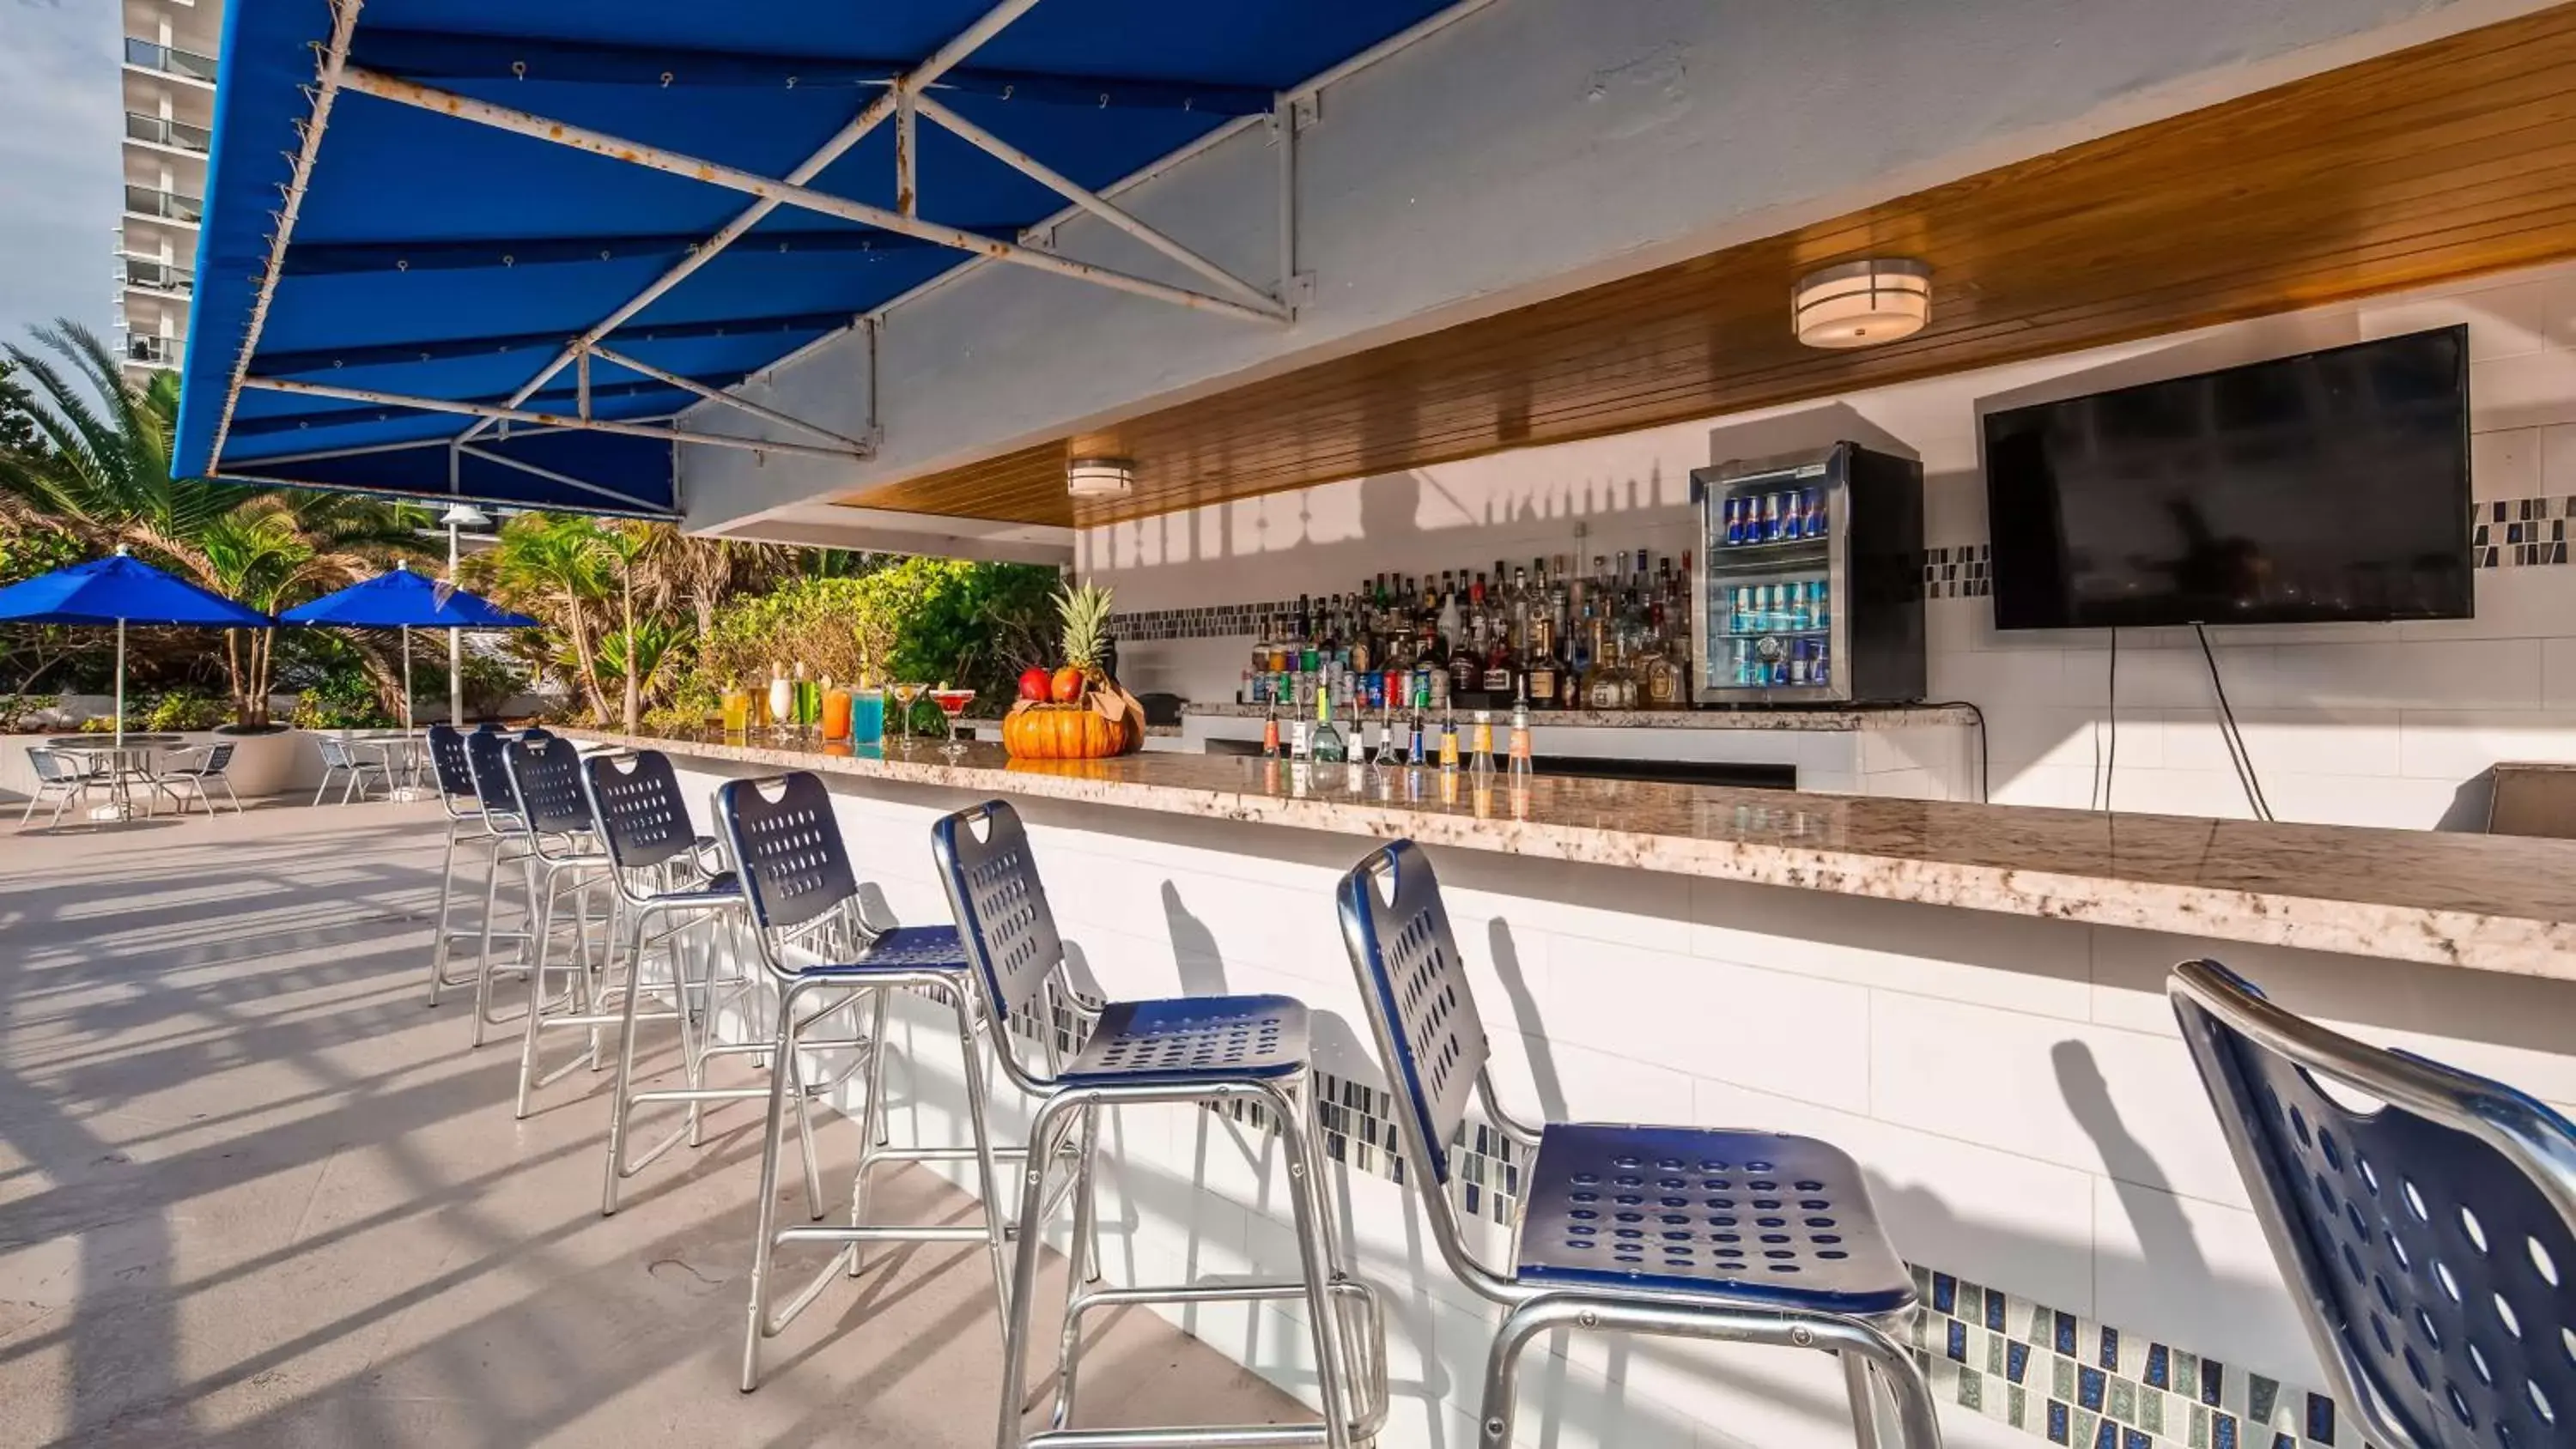 On site, Lounge/Bar in Best Western Plus Atlantic Beach Resort